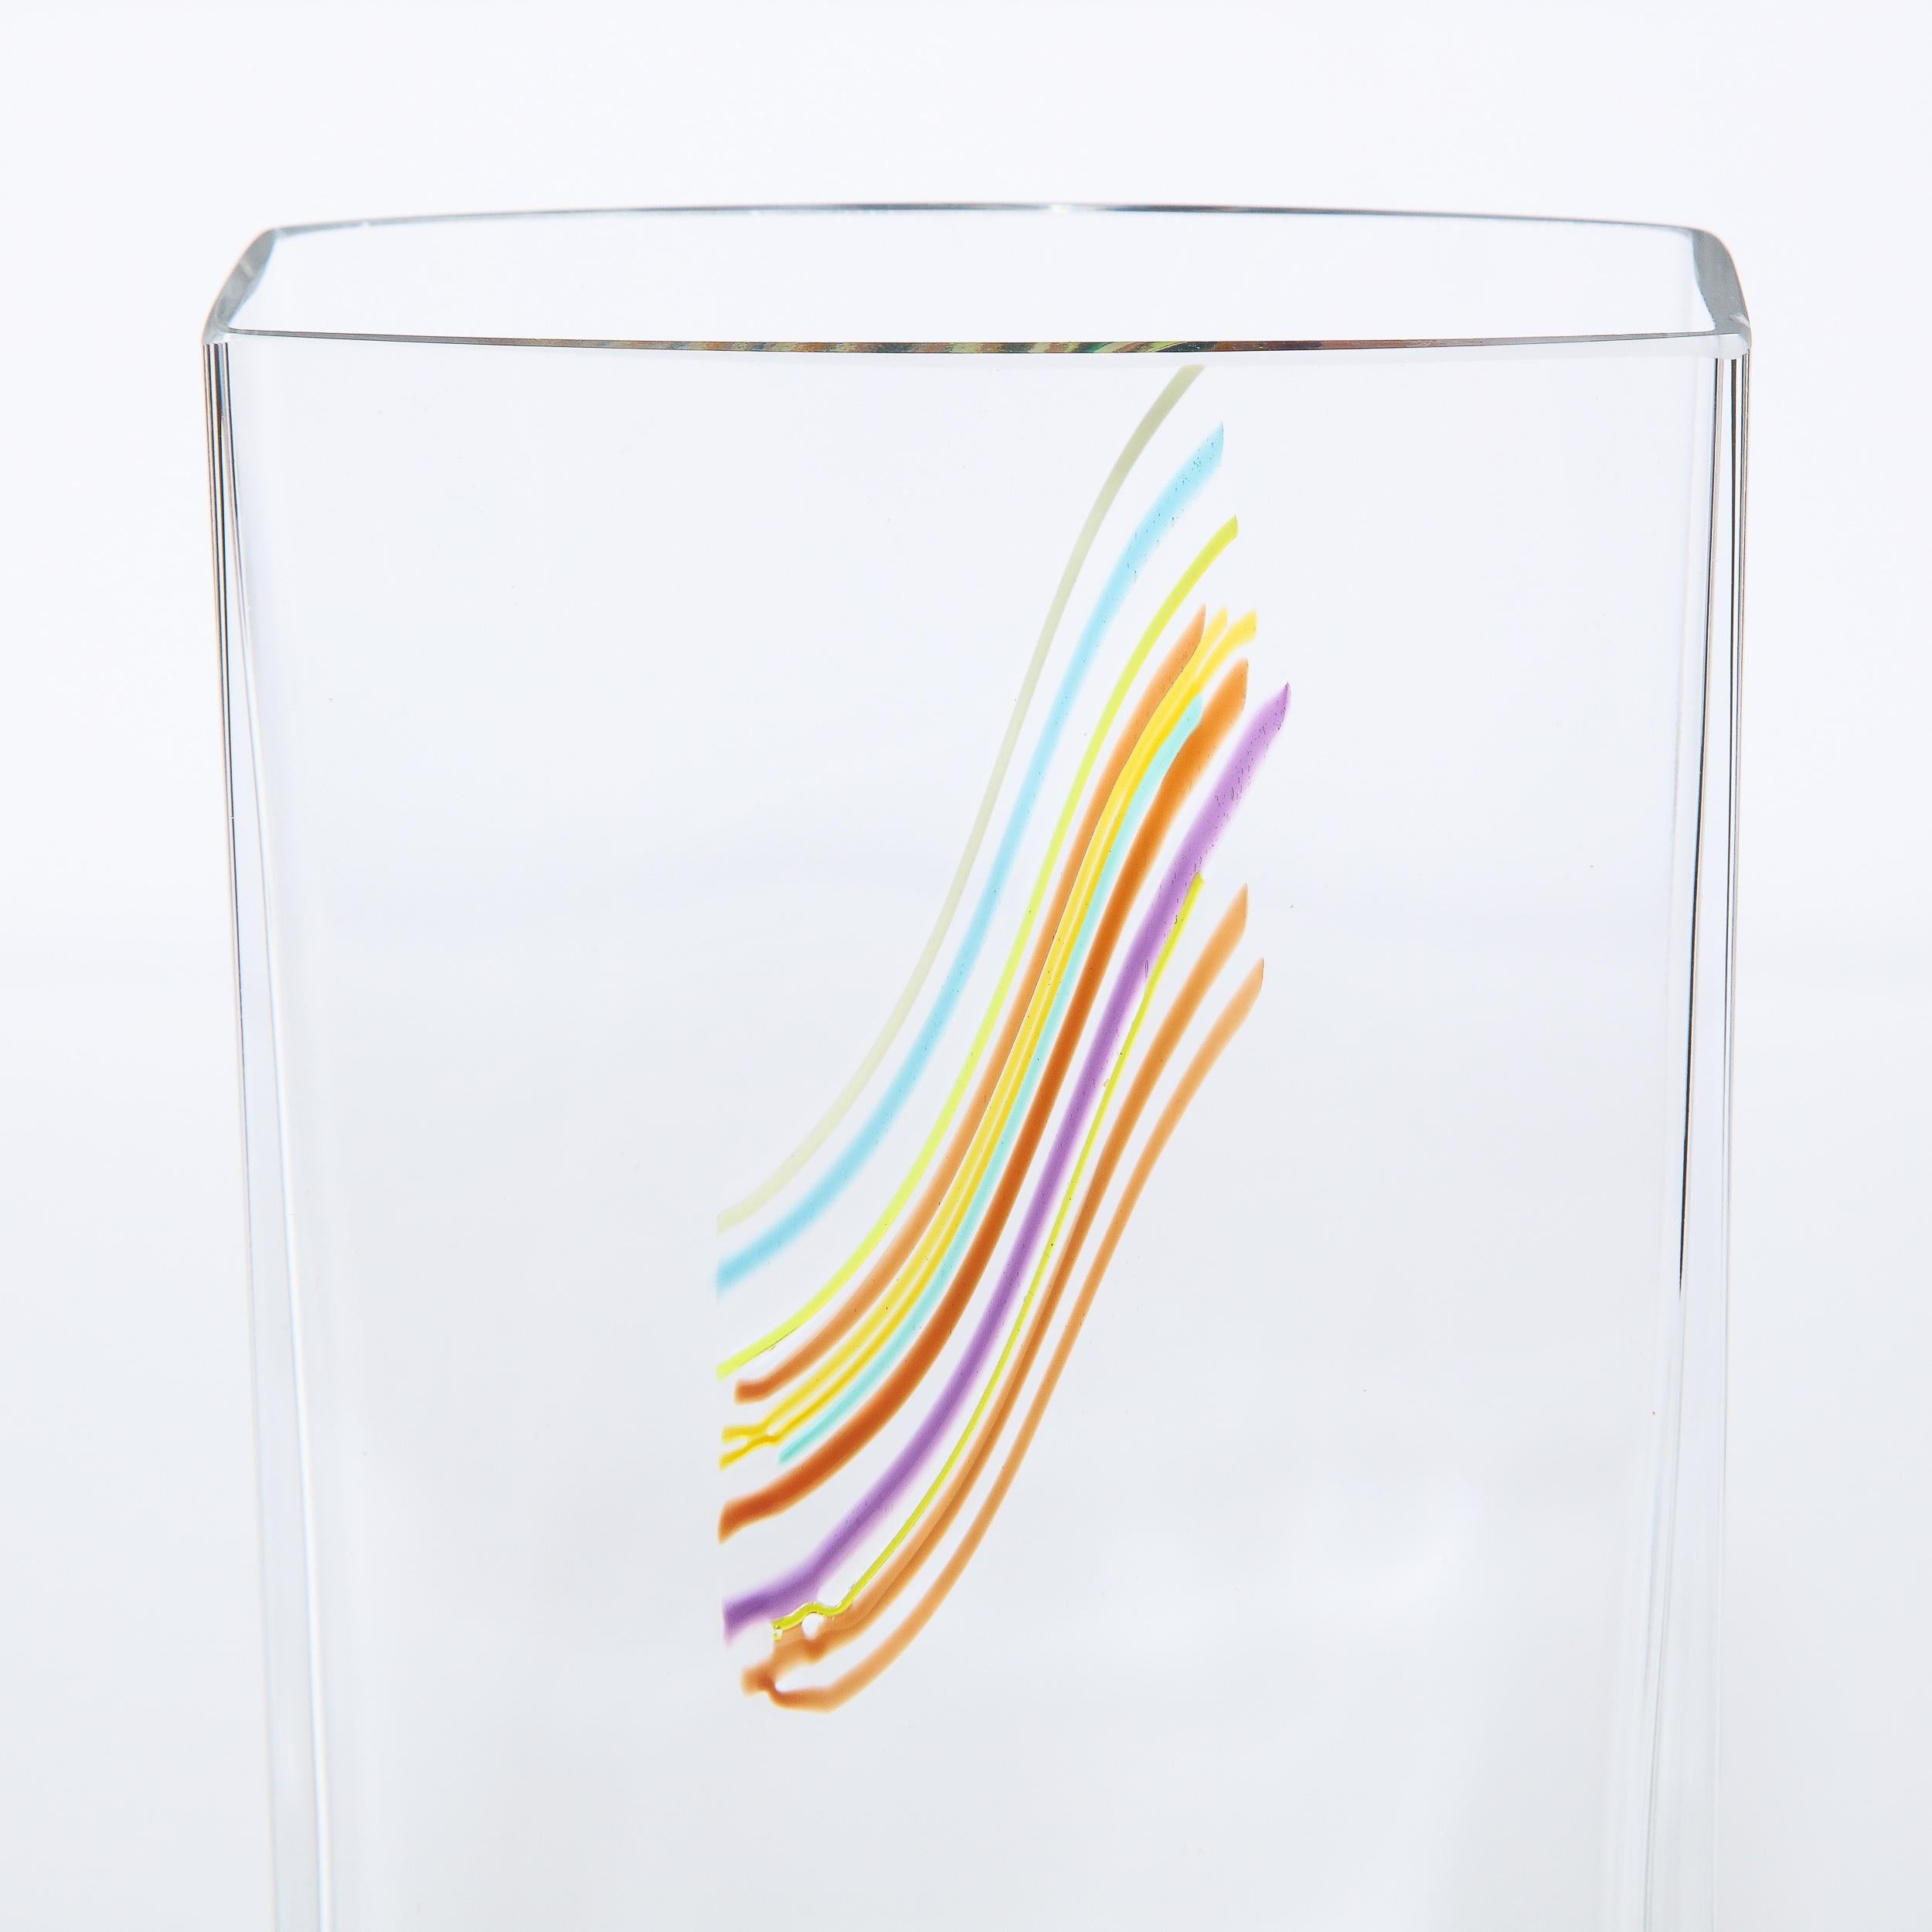 Swedish Modernist Rectangular Translucent Glass Vase by Bertil Vallien for Kosta Boda For Sale